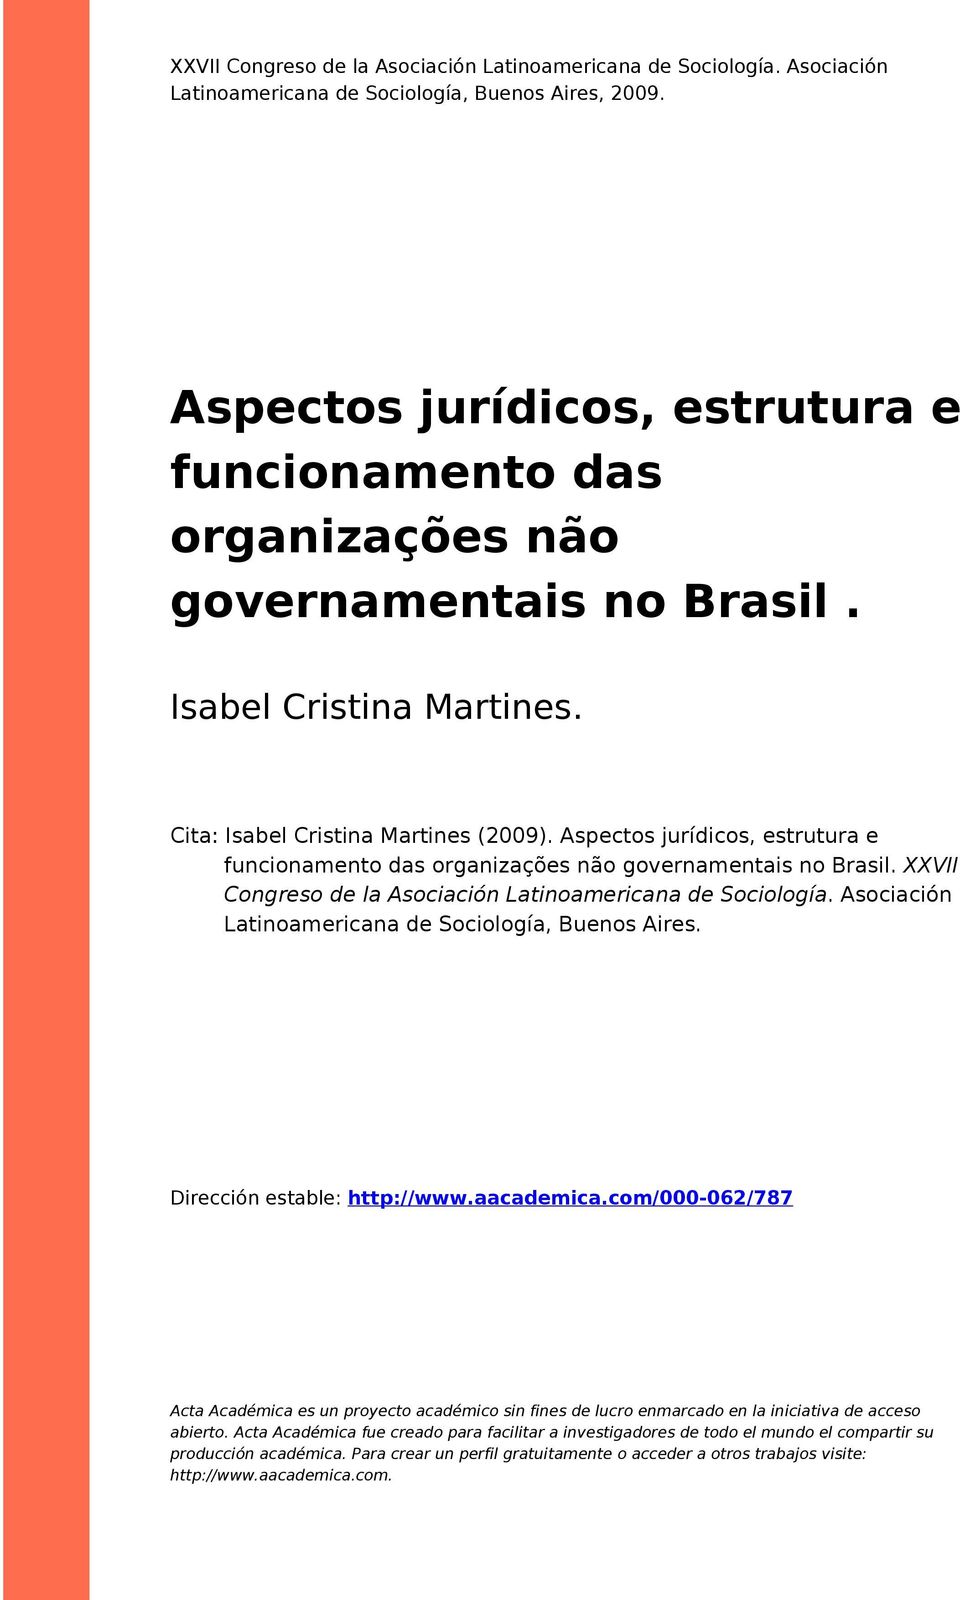 Aspectos jurídicos, estrutura e funcionamento das organizações não governamentais no Brasil. XXVII Congreso de la Asociación Latinoamericana de Sociología.